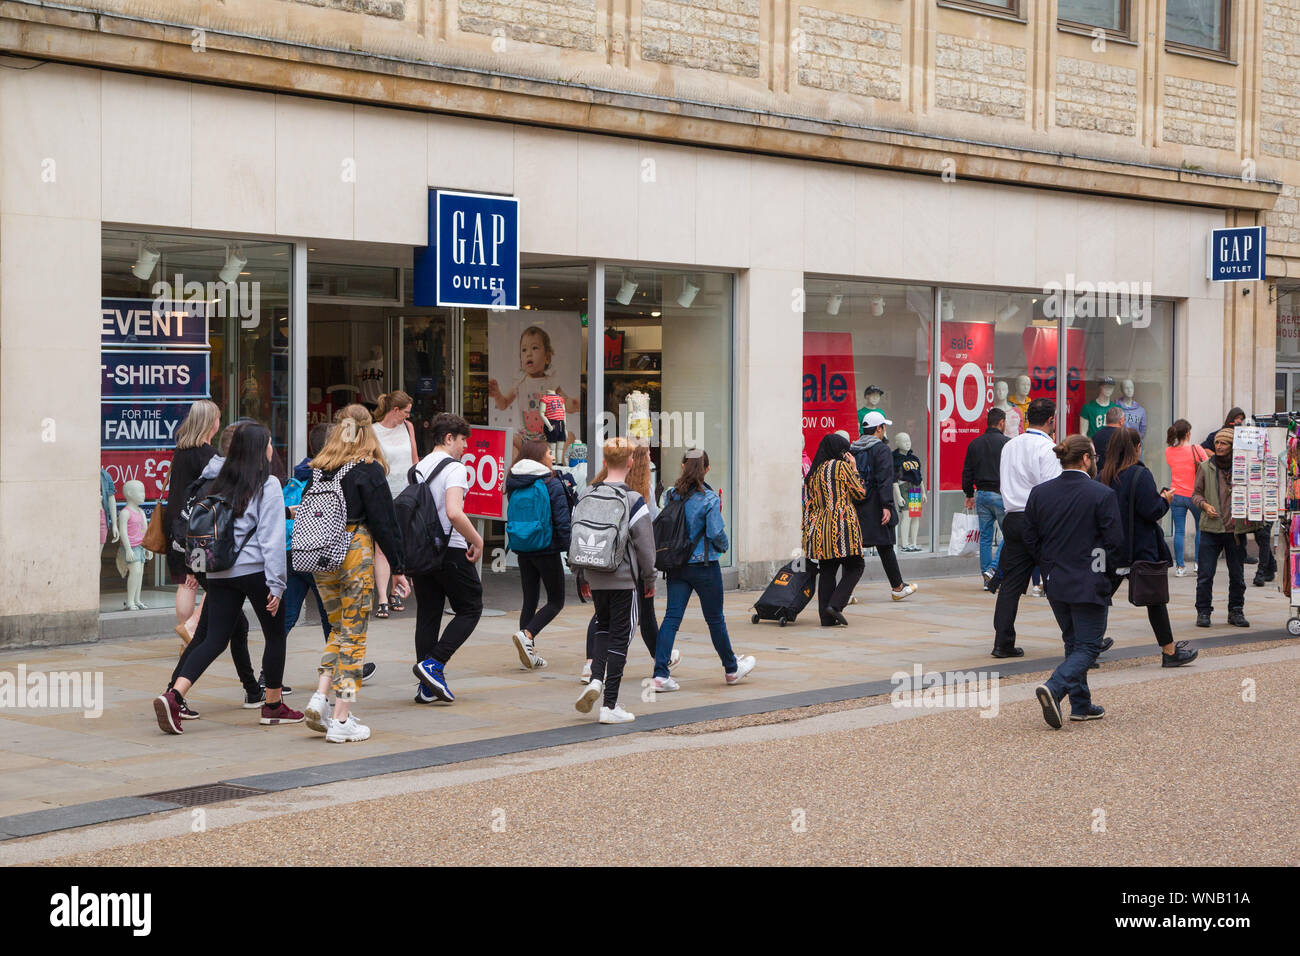 Shoppers passano dal gap store in Oxford con vendite per 60% off Foto Stock